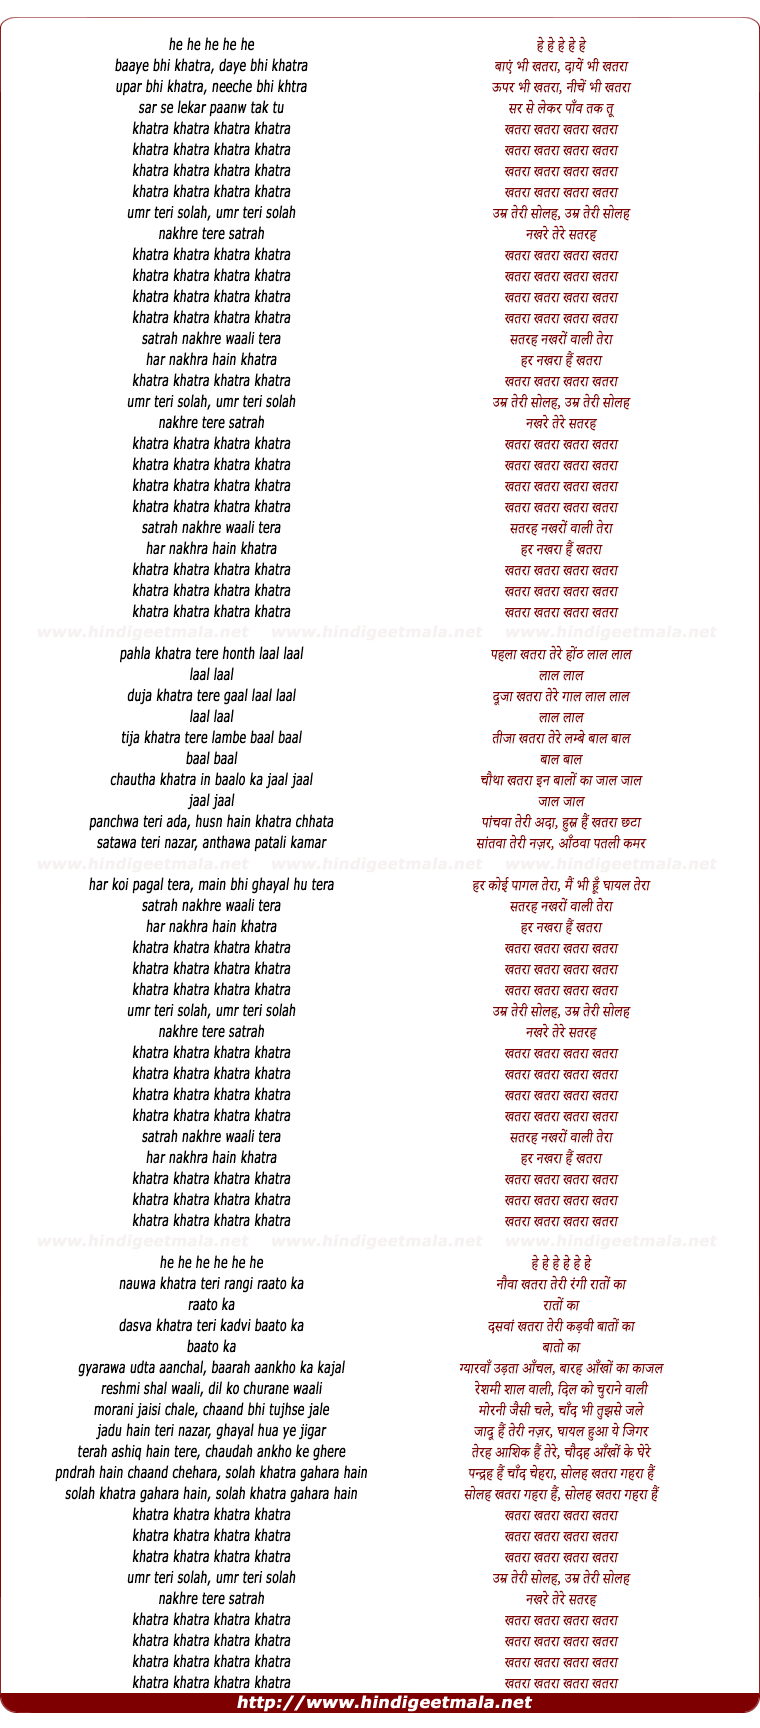 lyrics of song Umr Teri Solah